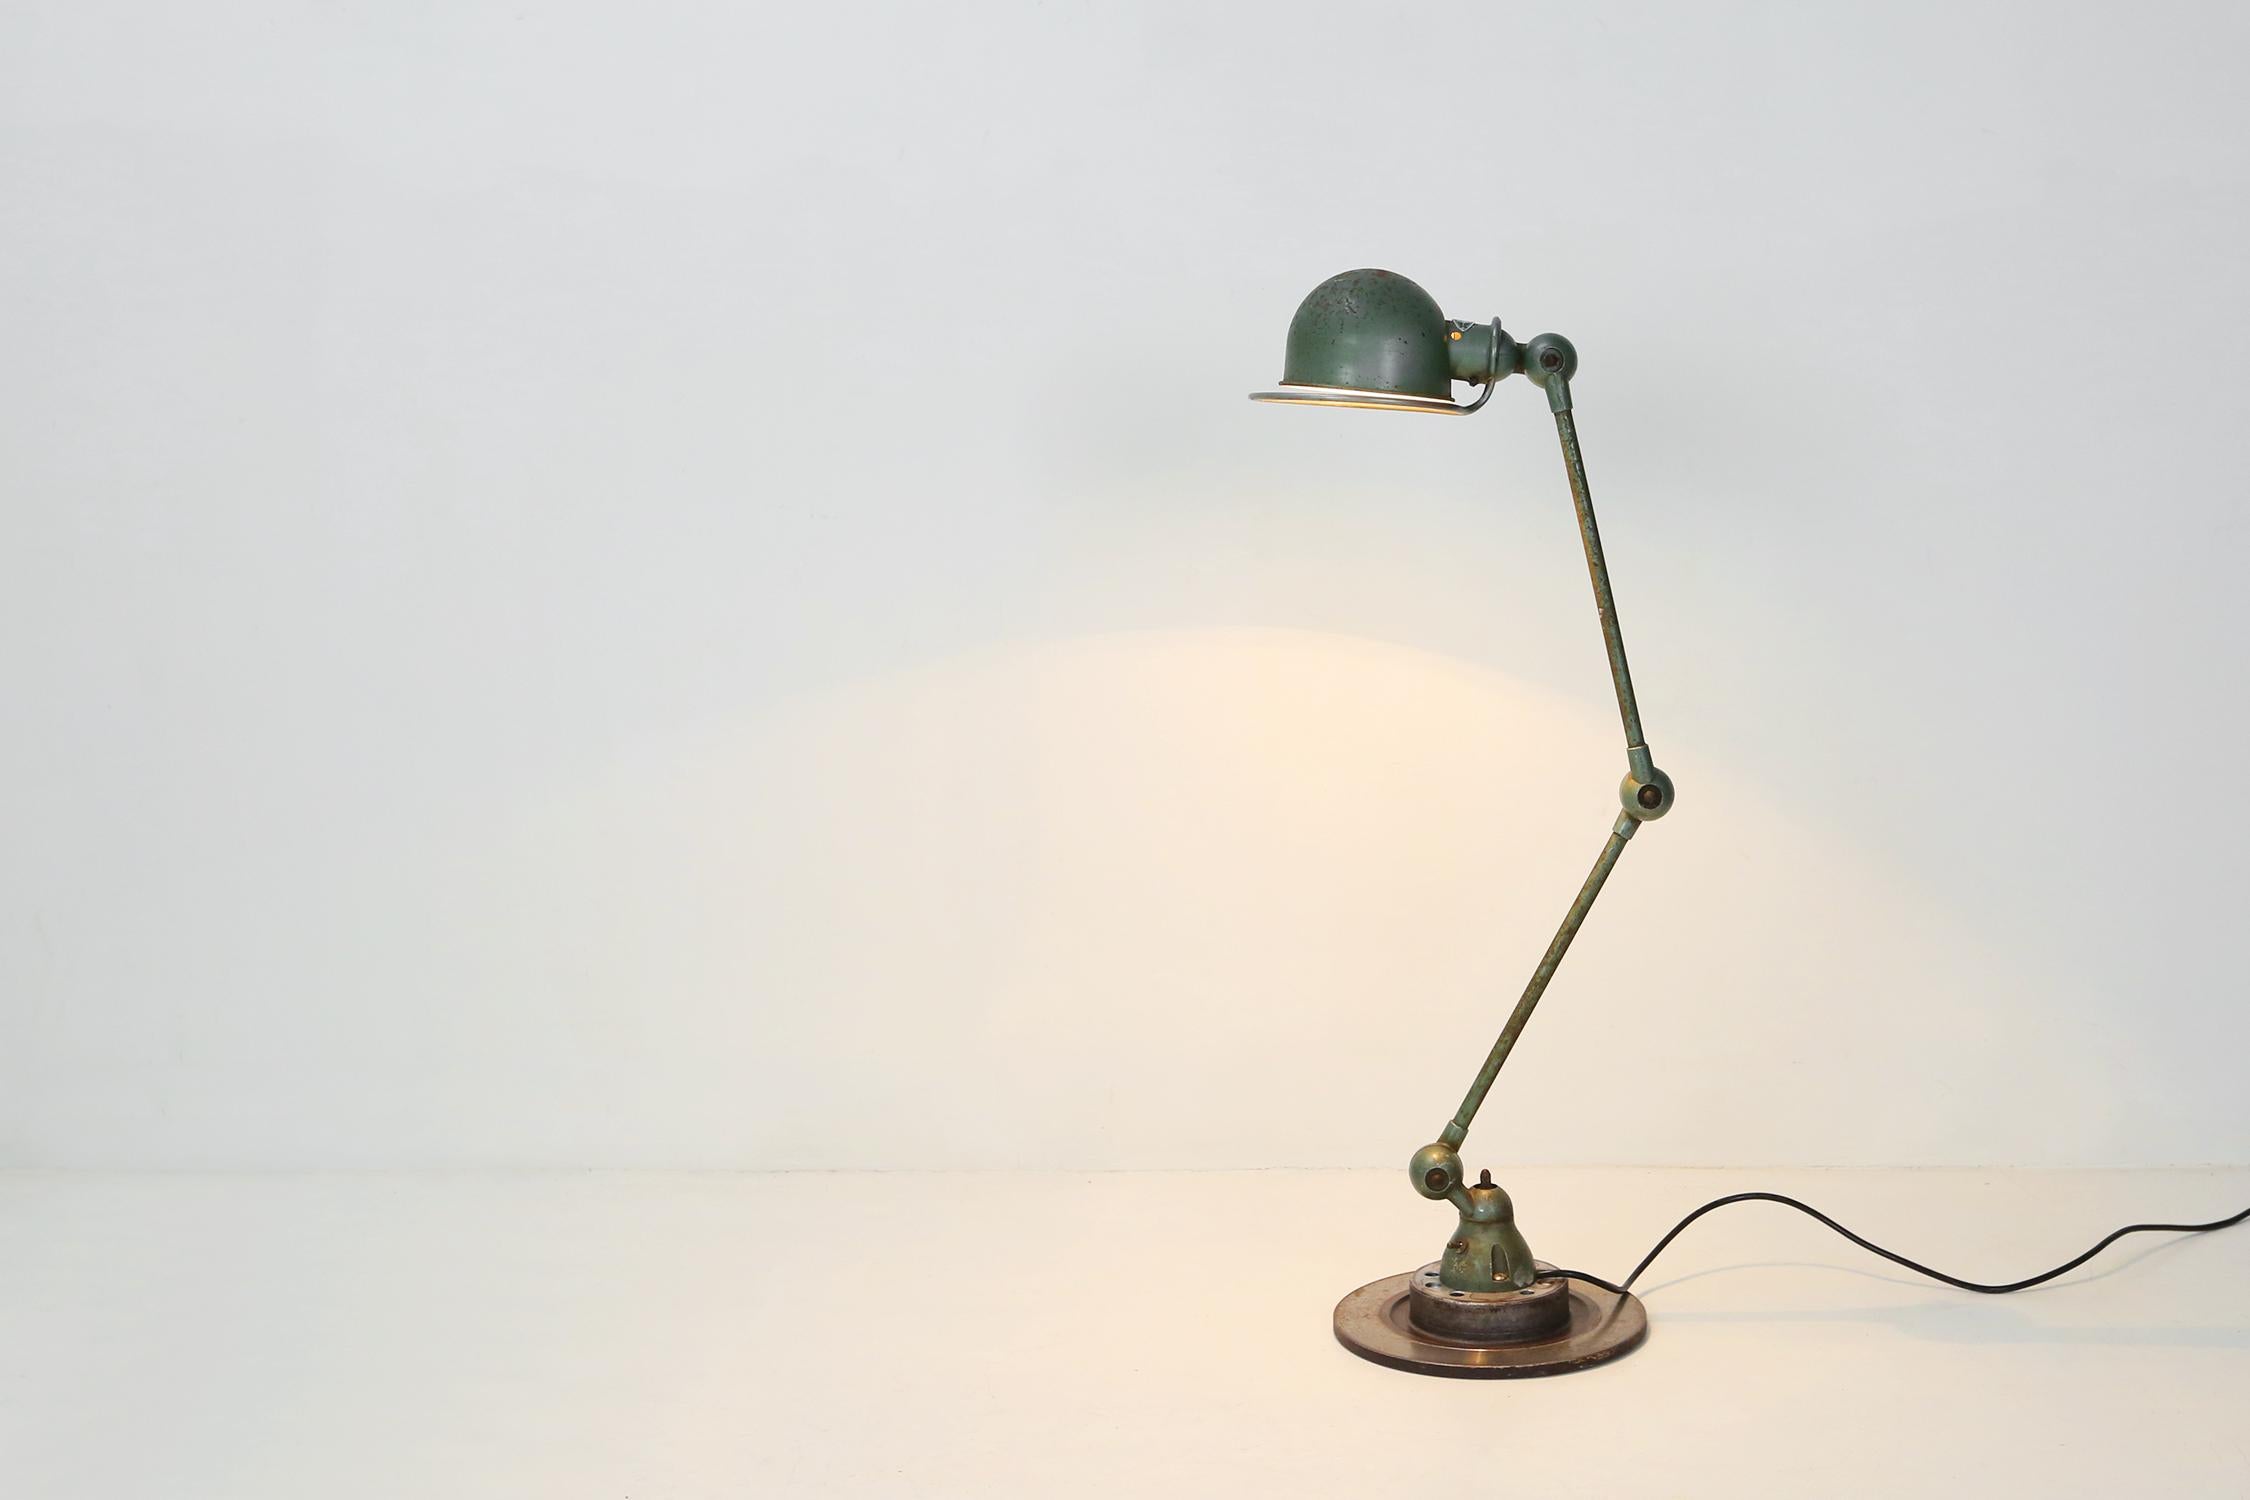 Lampe industrielle de la marque française Jieldé.
La lampe est entièrement originale et repose sur une solide base en métal. La lampe a une belle patine et est prête à l'emploi.